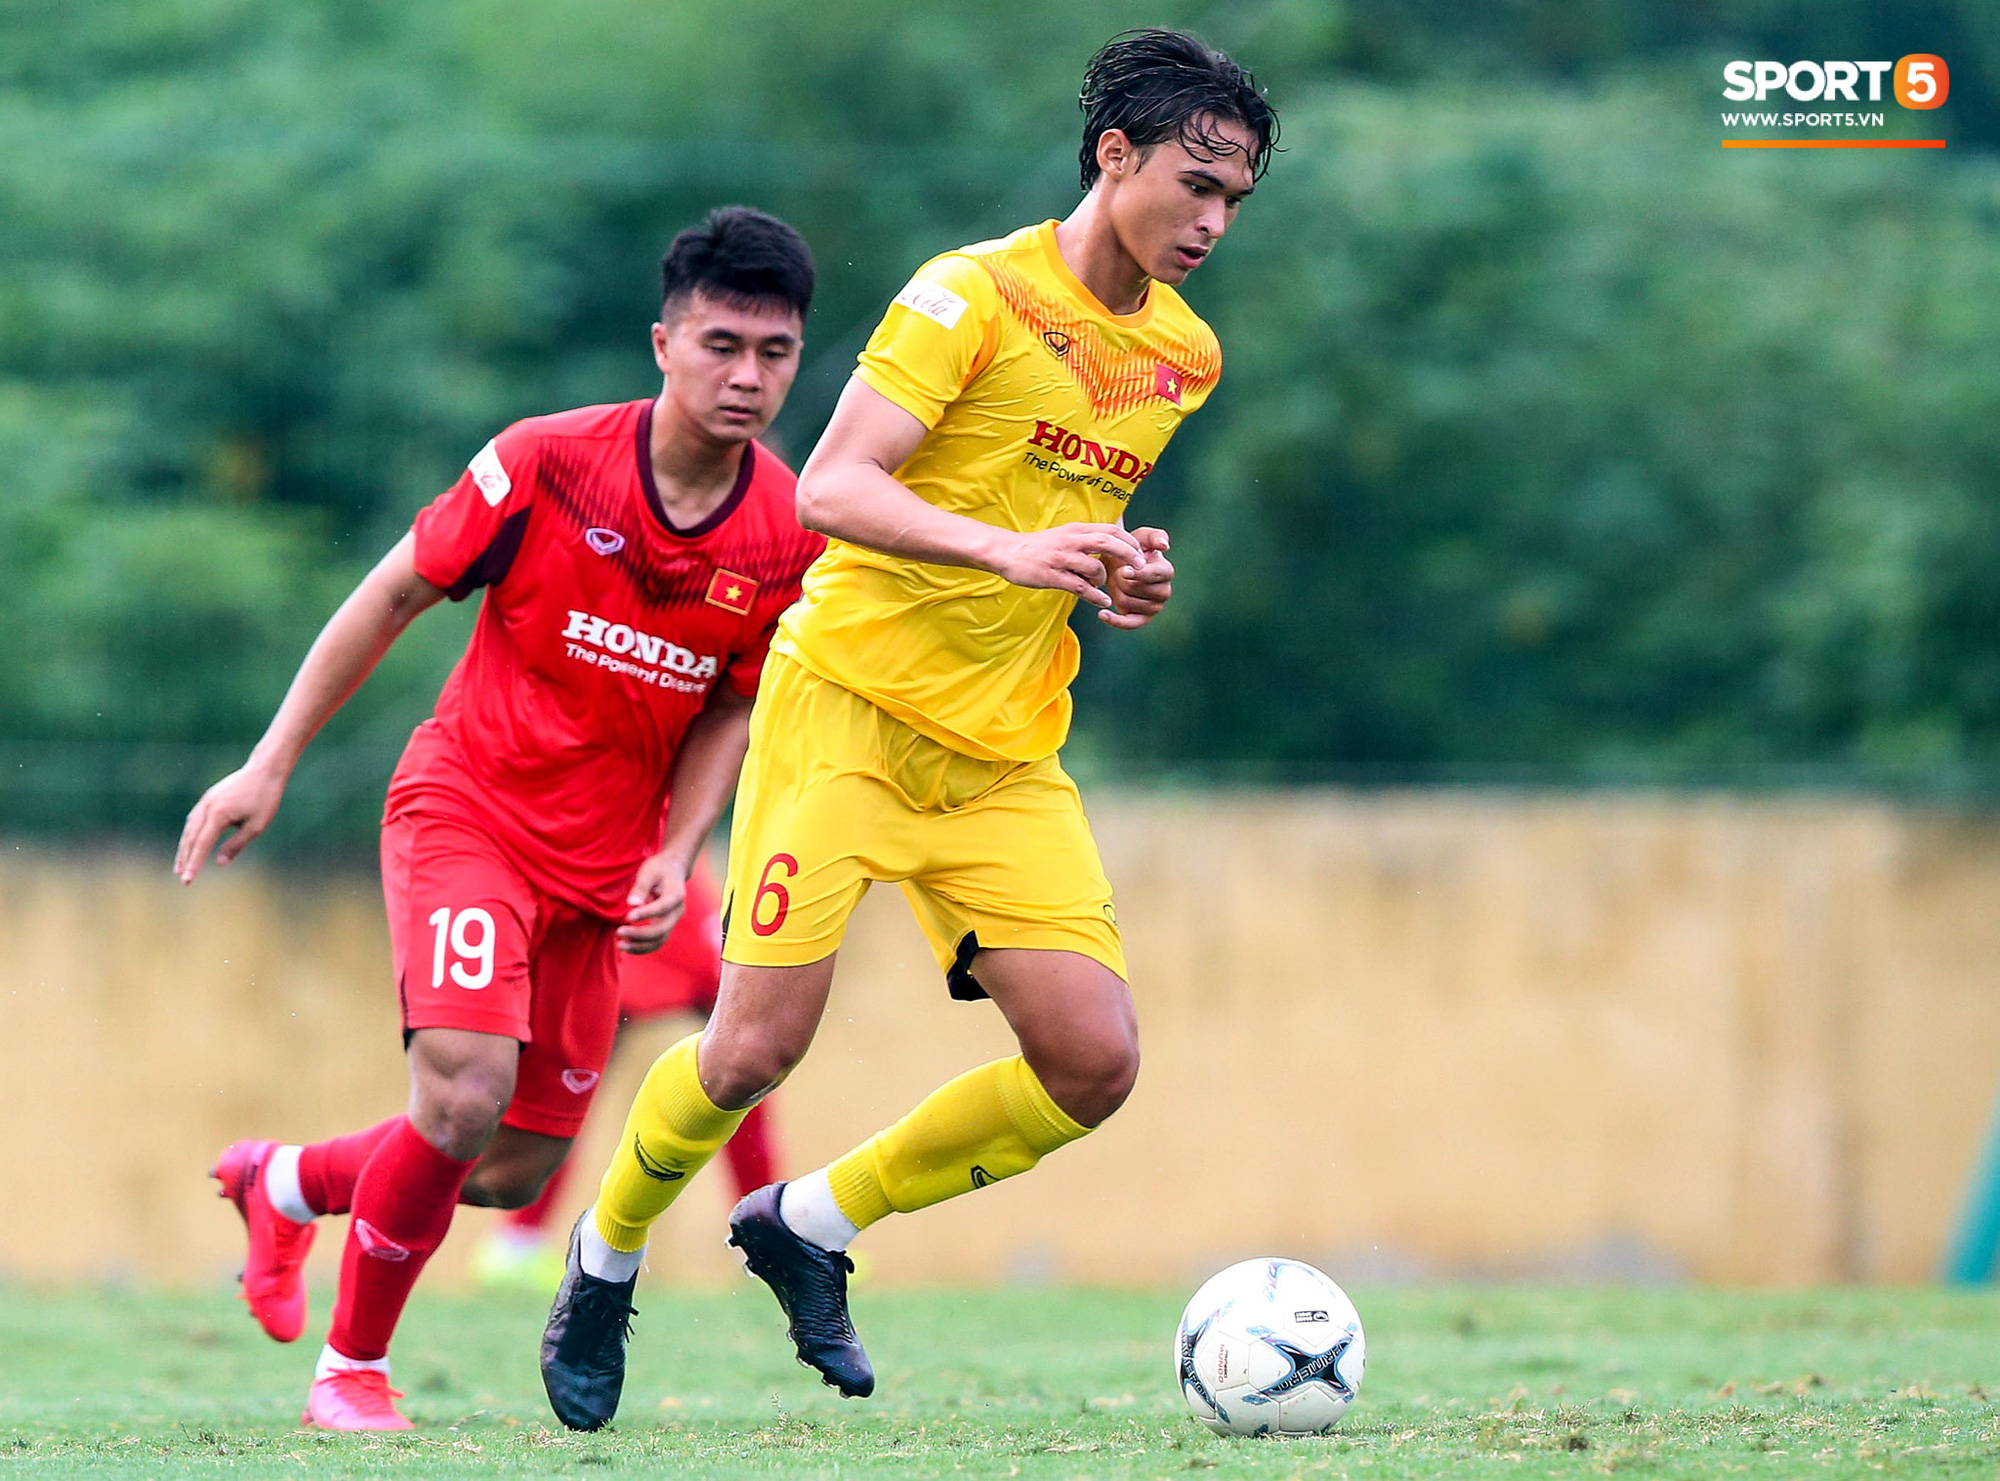 V.League 2020 lo vỡ trận vì nhiều đội xin huỷ giải, U22 Việt Nam nguy cơ mất đợt tập trung - Ảnh 3.